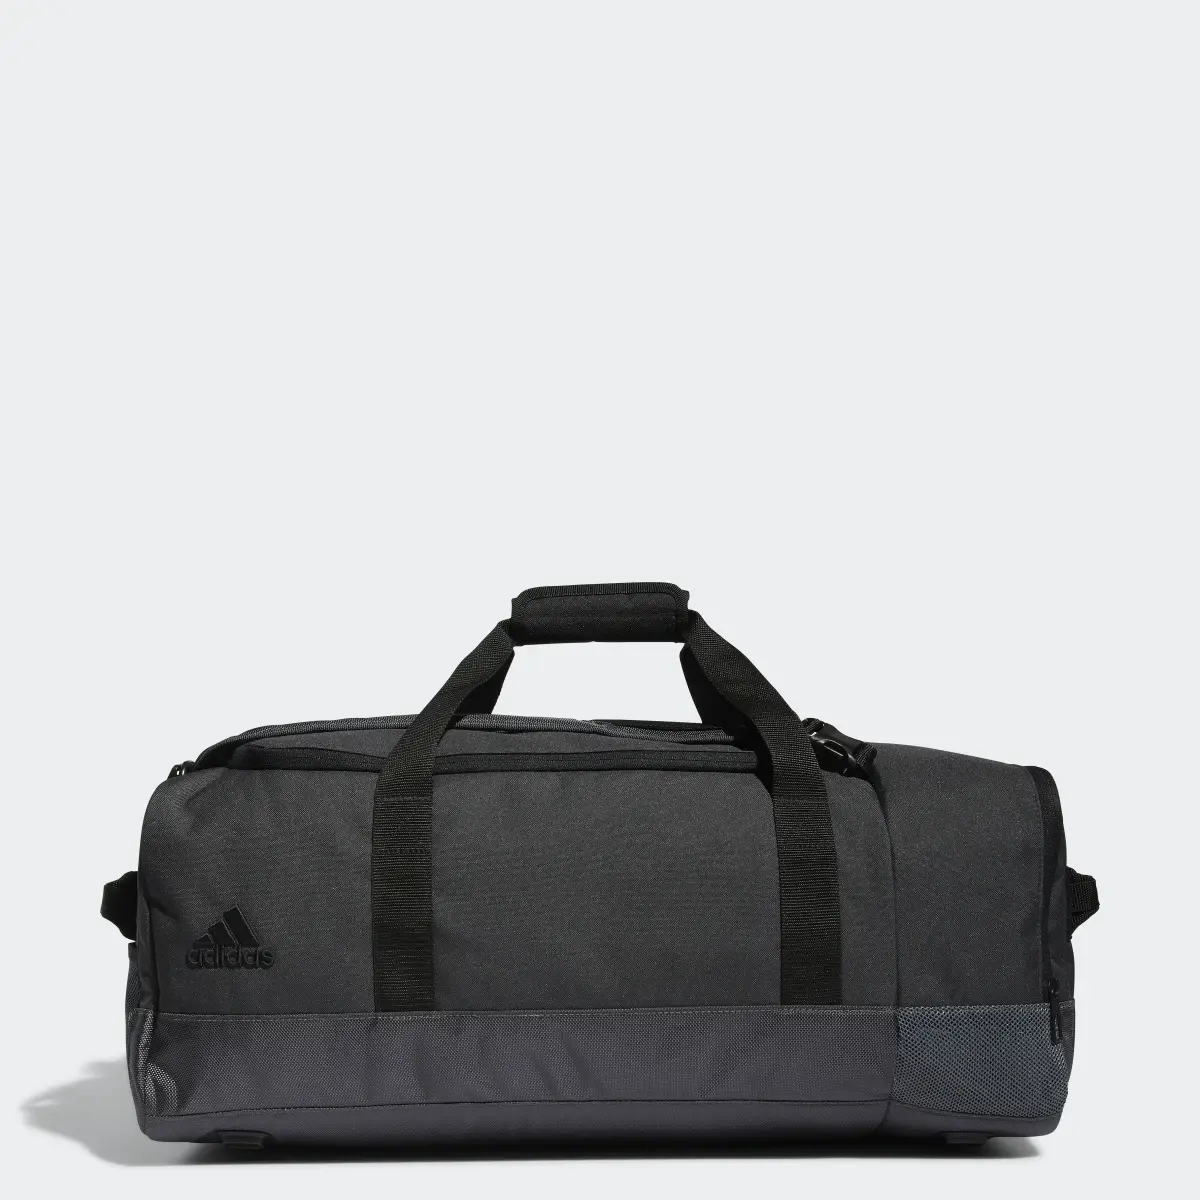 Adidas Golf Duffle Bag. 1